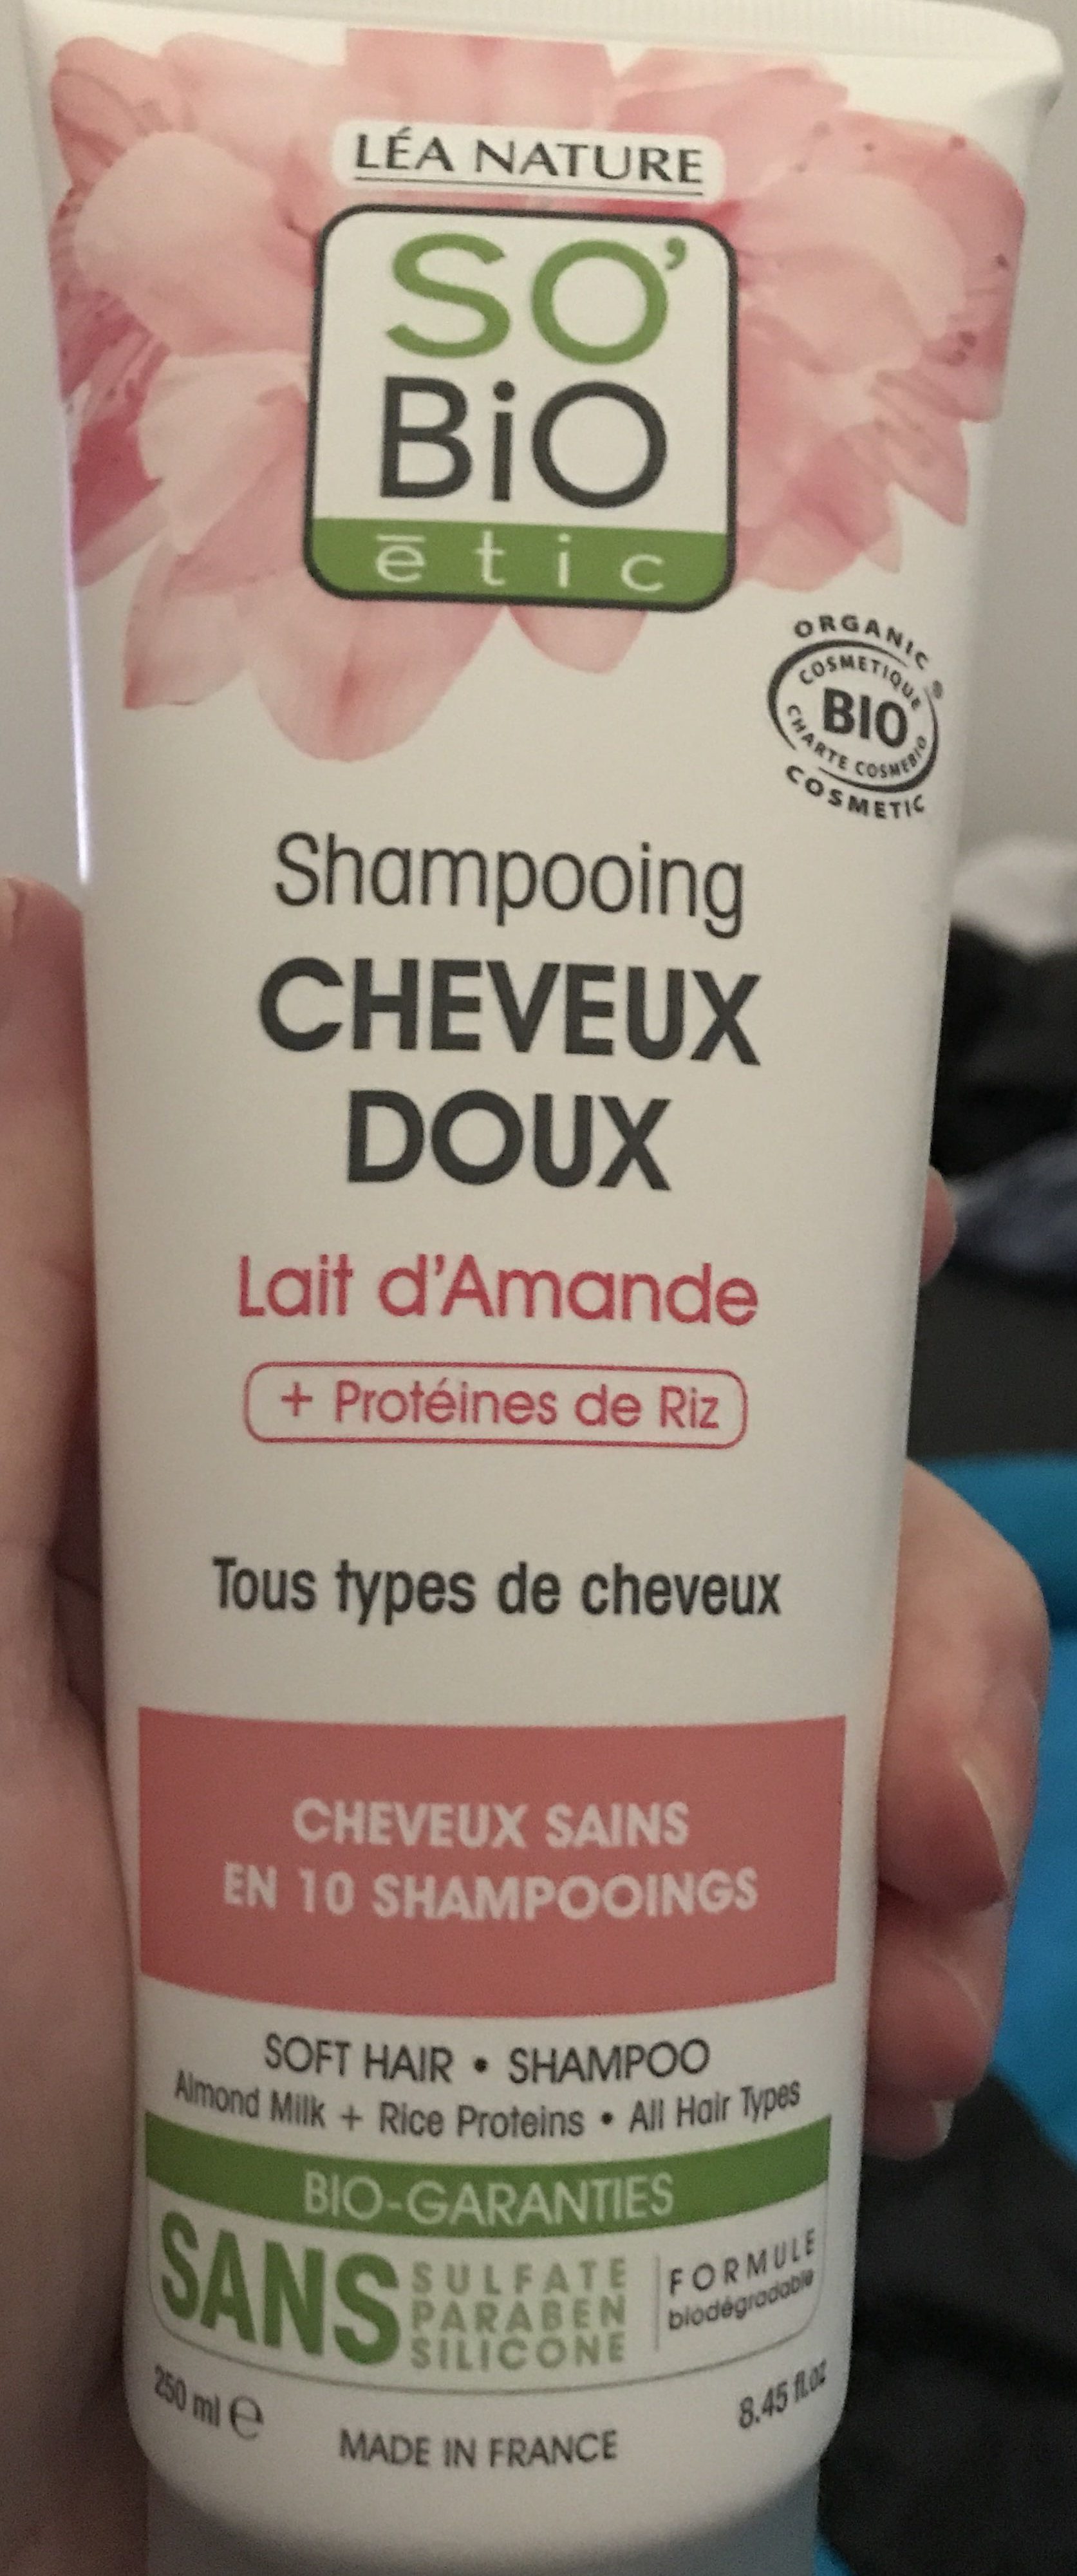 Shampooing cheveux doux lait d'amande - Produto - fr